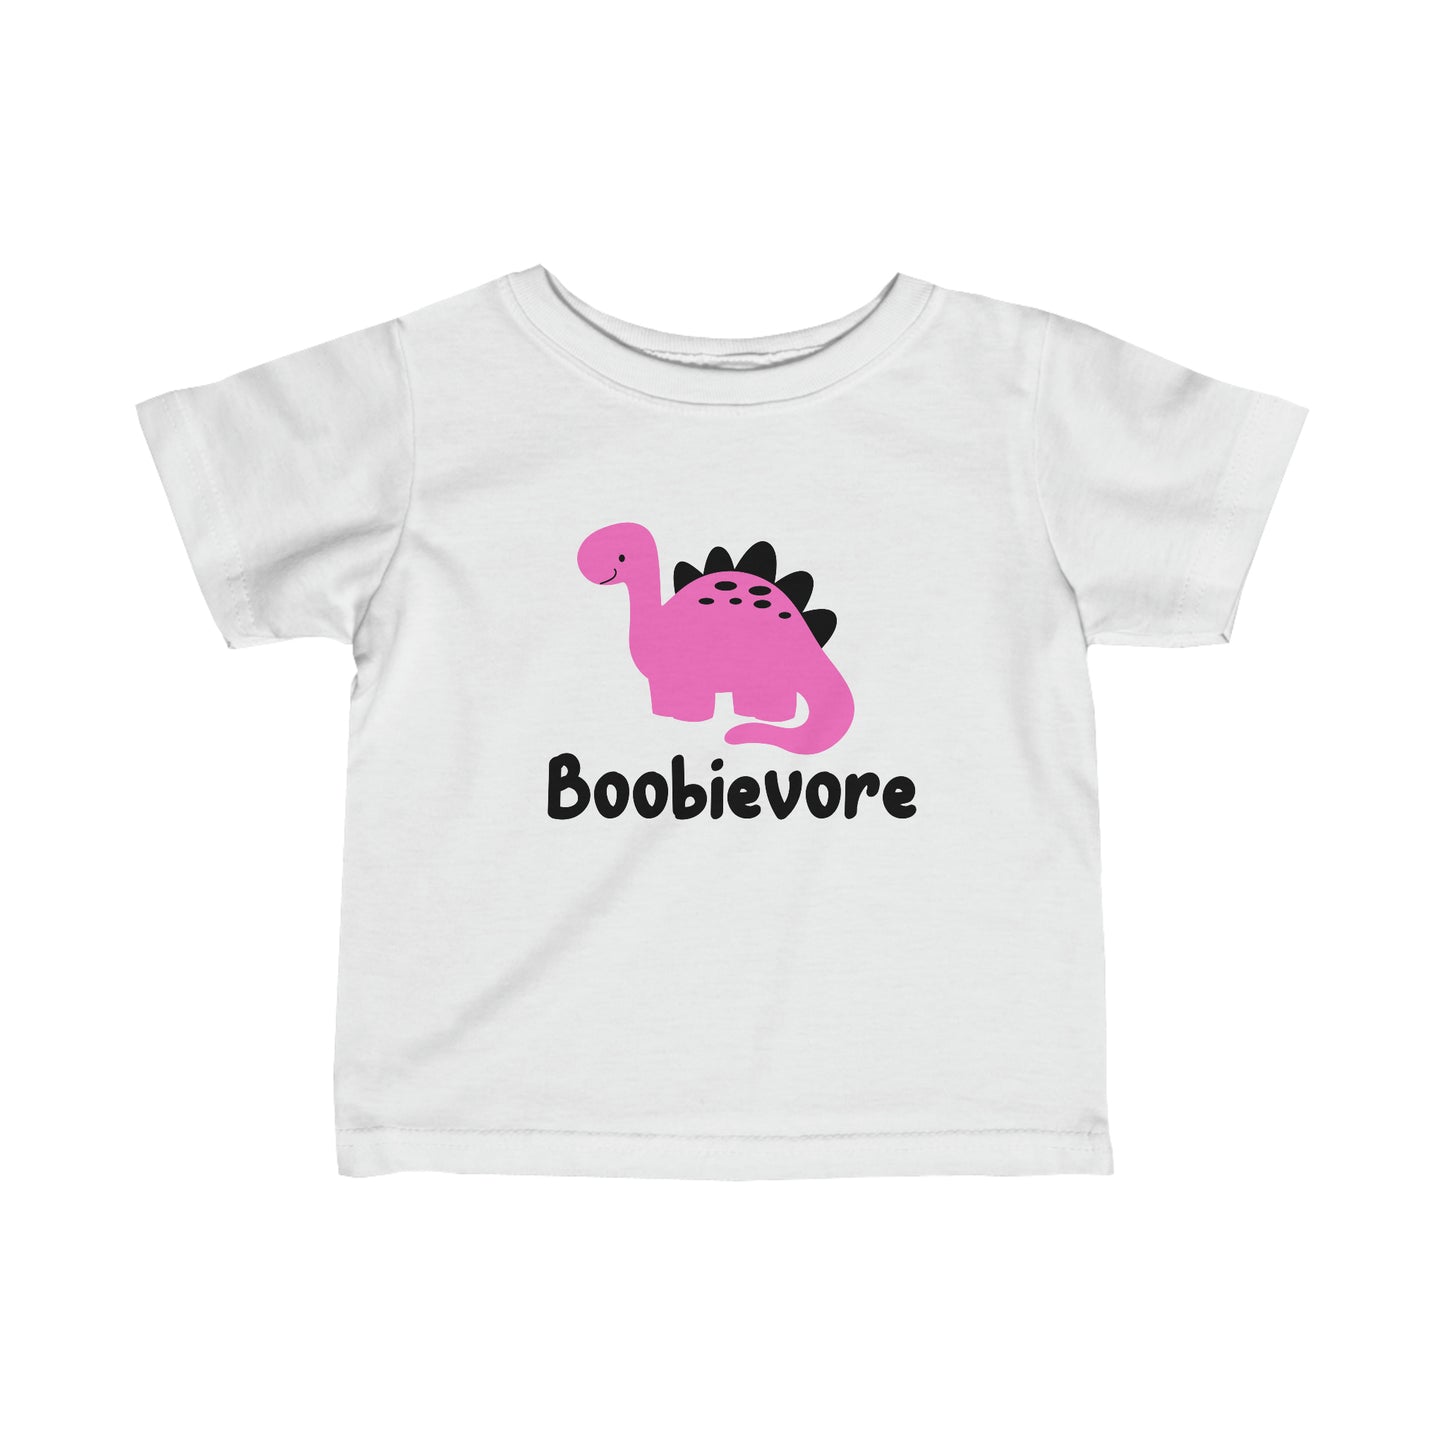 Boobievore T-shirt